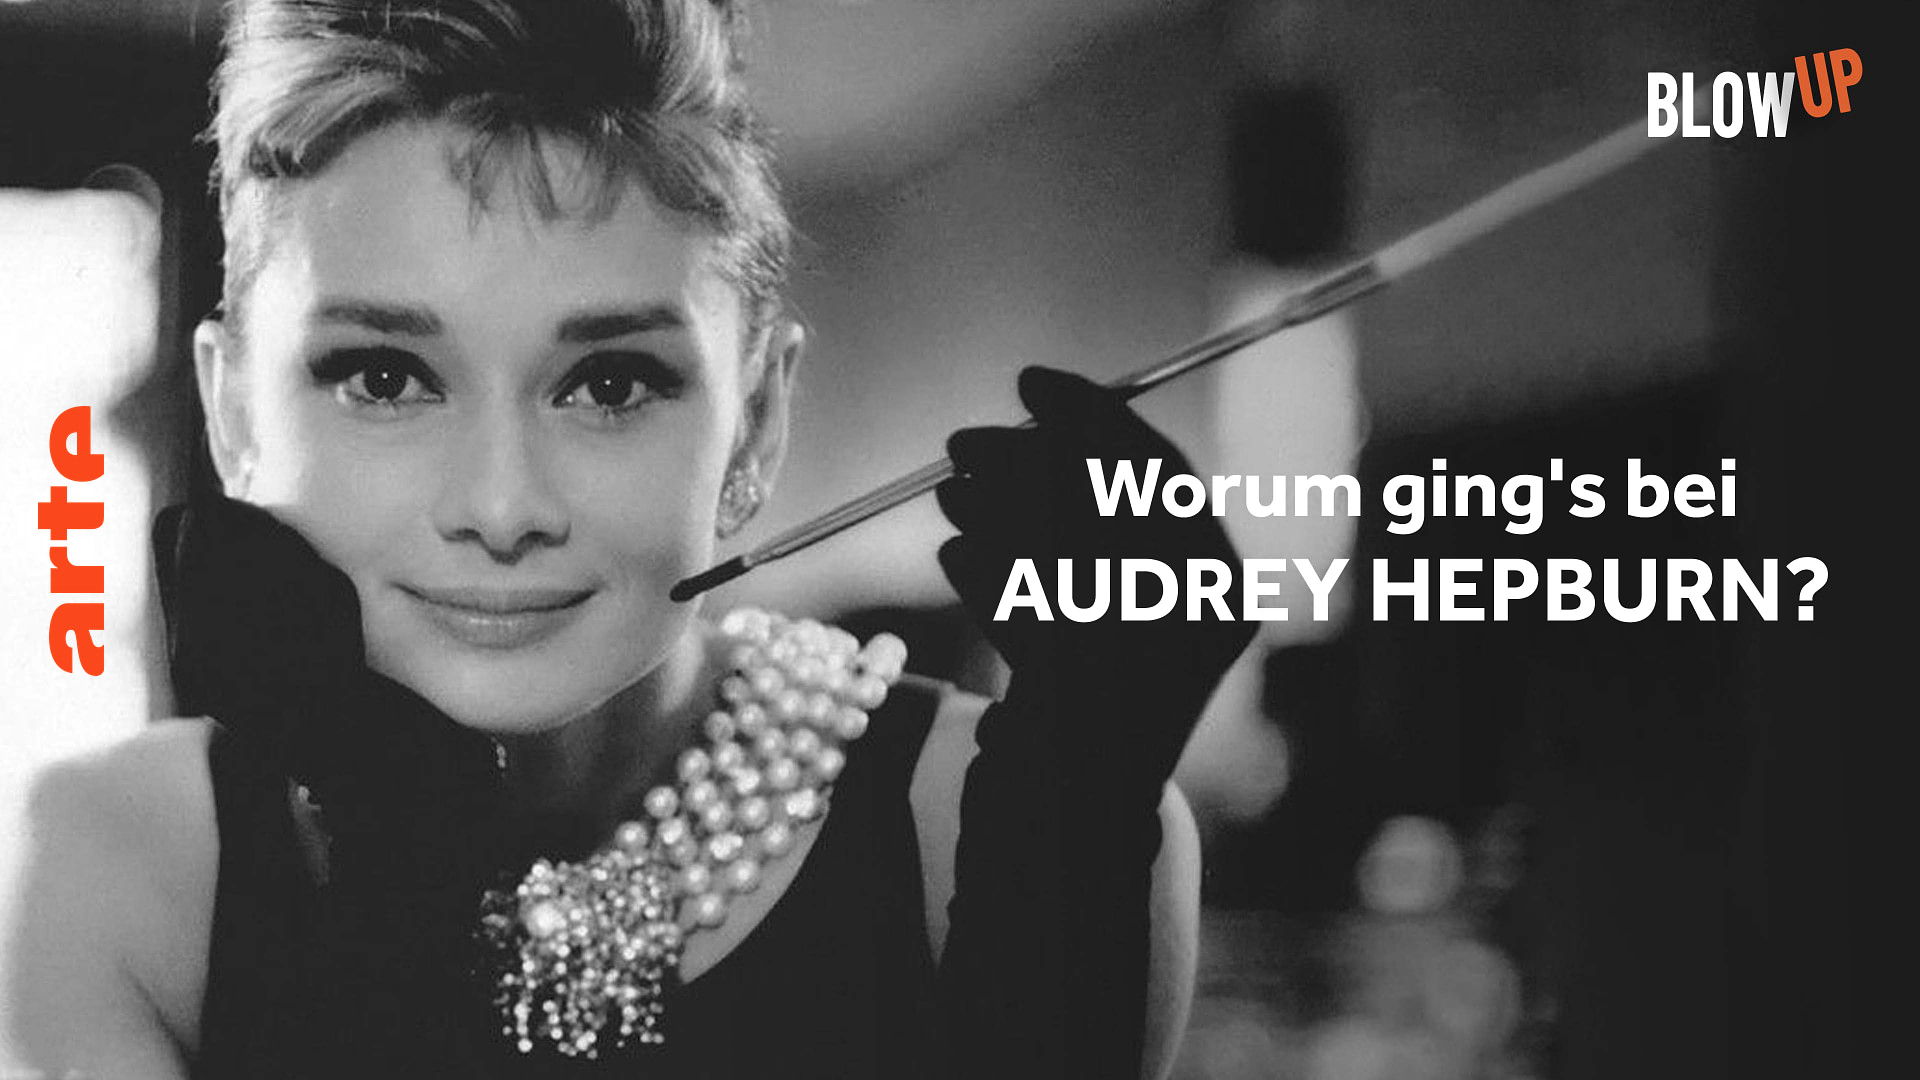 Blow up - Worum ging's bei Audrey Hepburn?